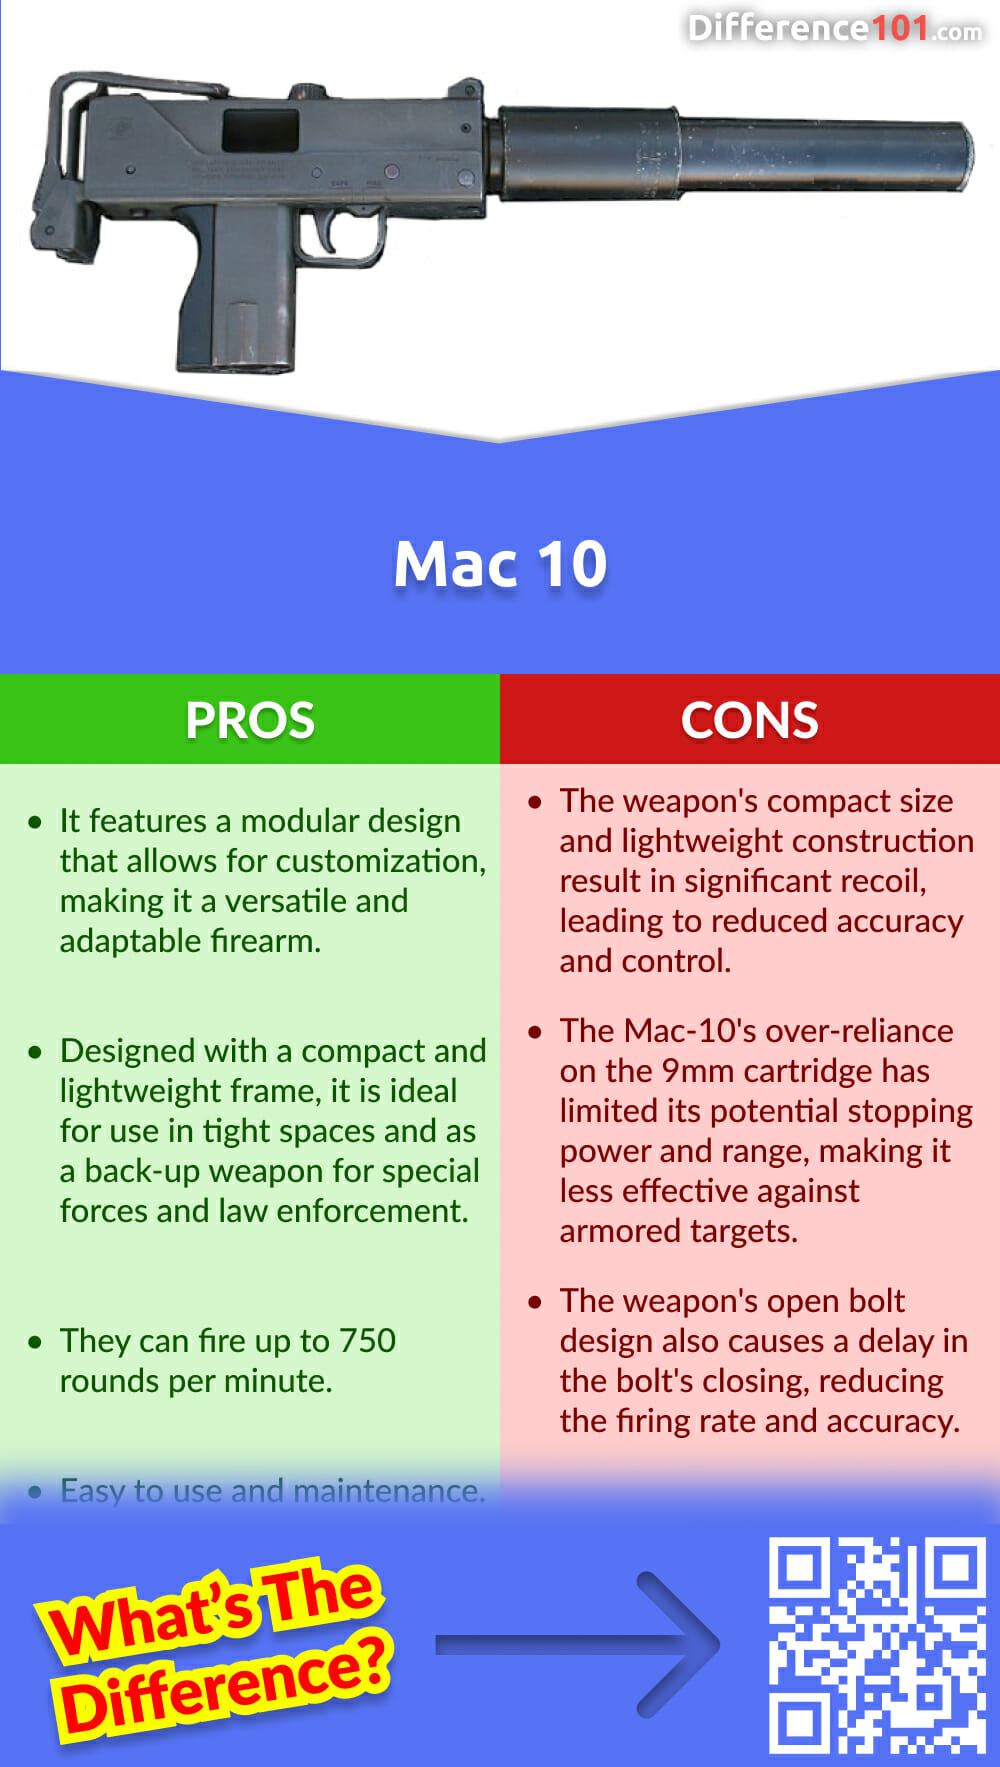 Vorteile und Nachteile von Mac 10